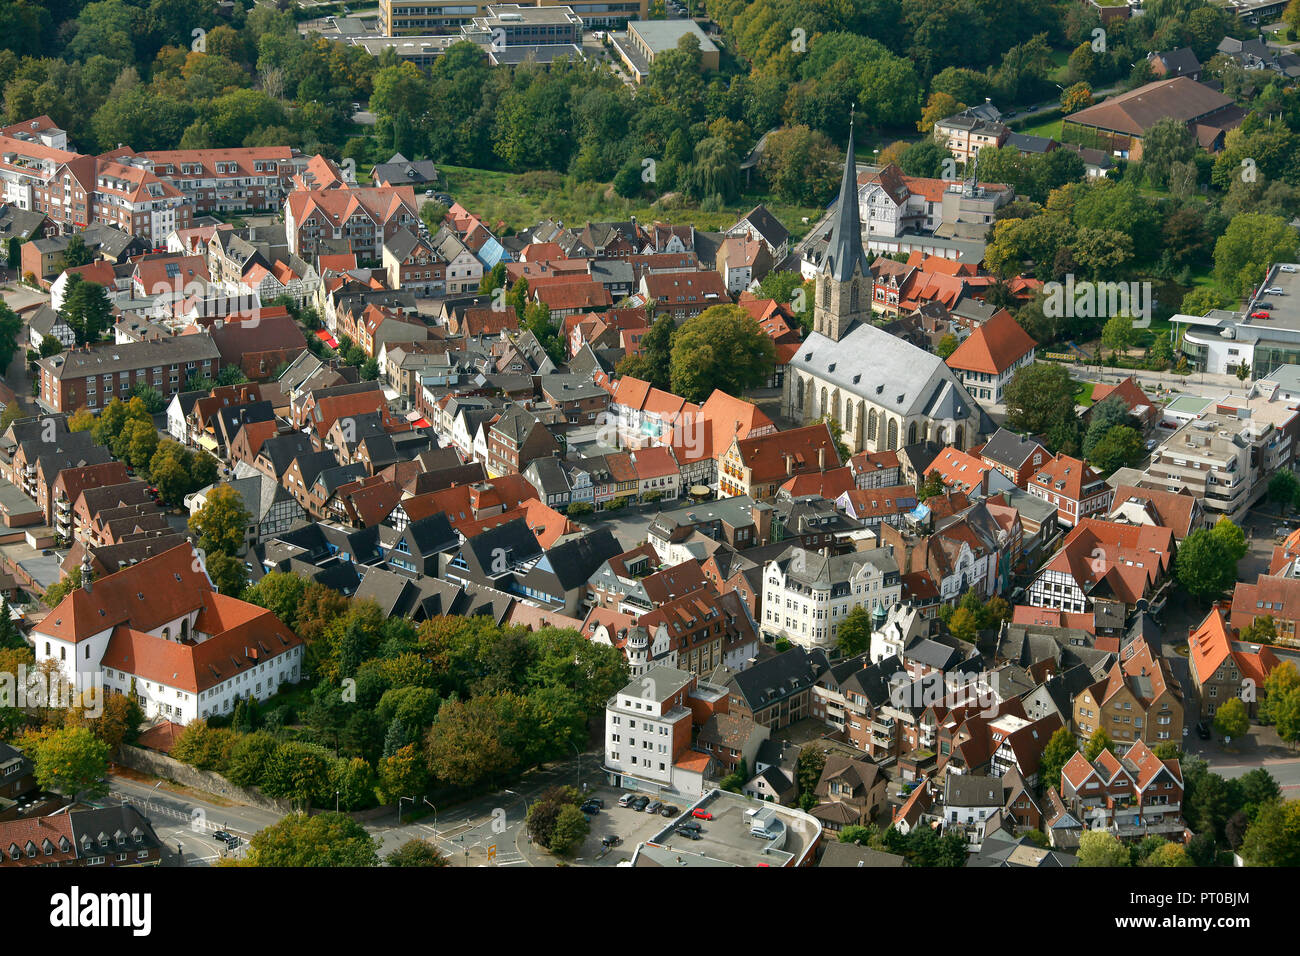 Vista aerea, nel centro cittadino con la chiesa di San Cristoforo, Werne, la zona della Ruhr, Renania settentrionale-Vestfalia, Germania, Europa Foto Stock